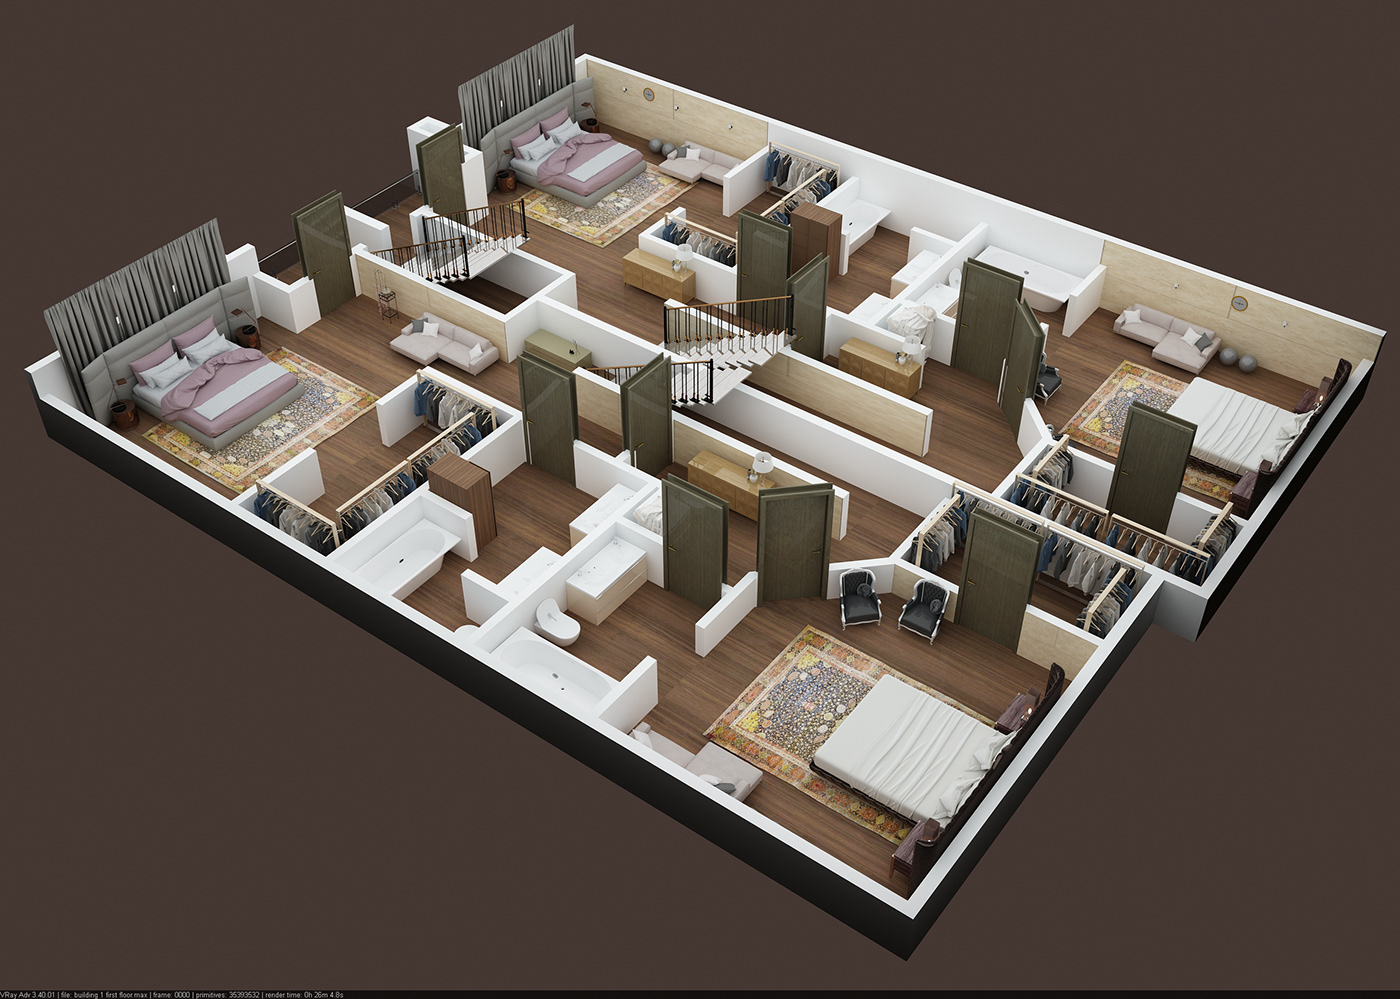 3d floor plan OF DUPLEX APPARTMENT FIRST FLOOR RENDER in 3d max VRY #3D FLOOR Plan